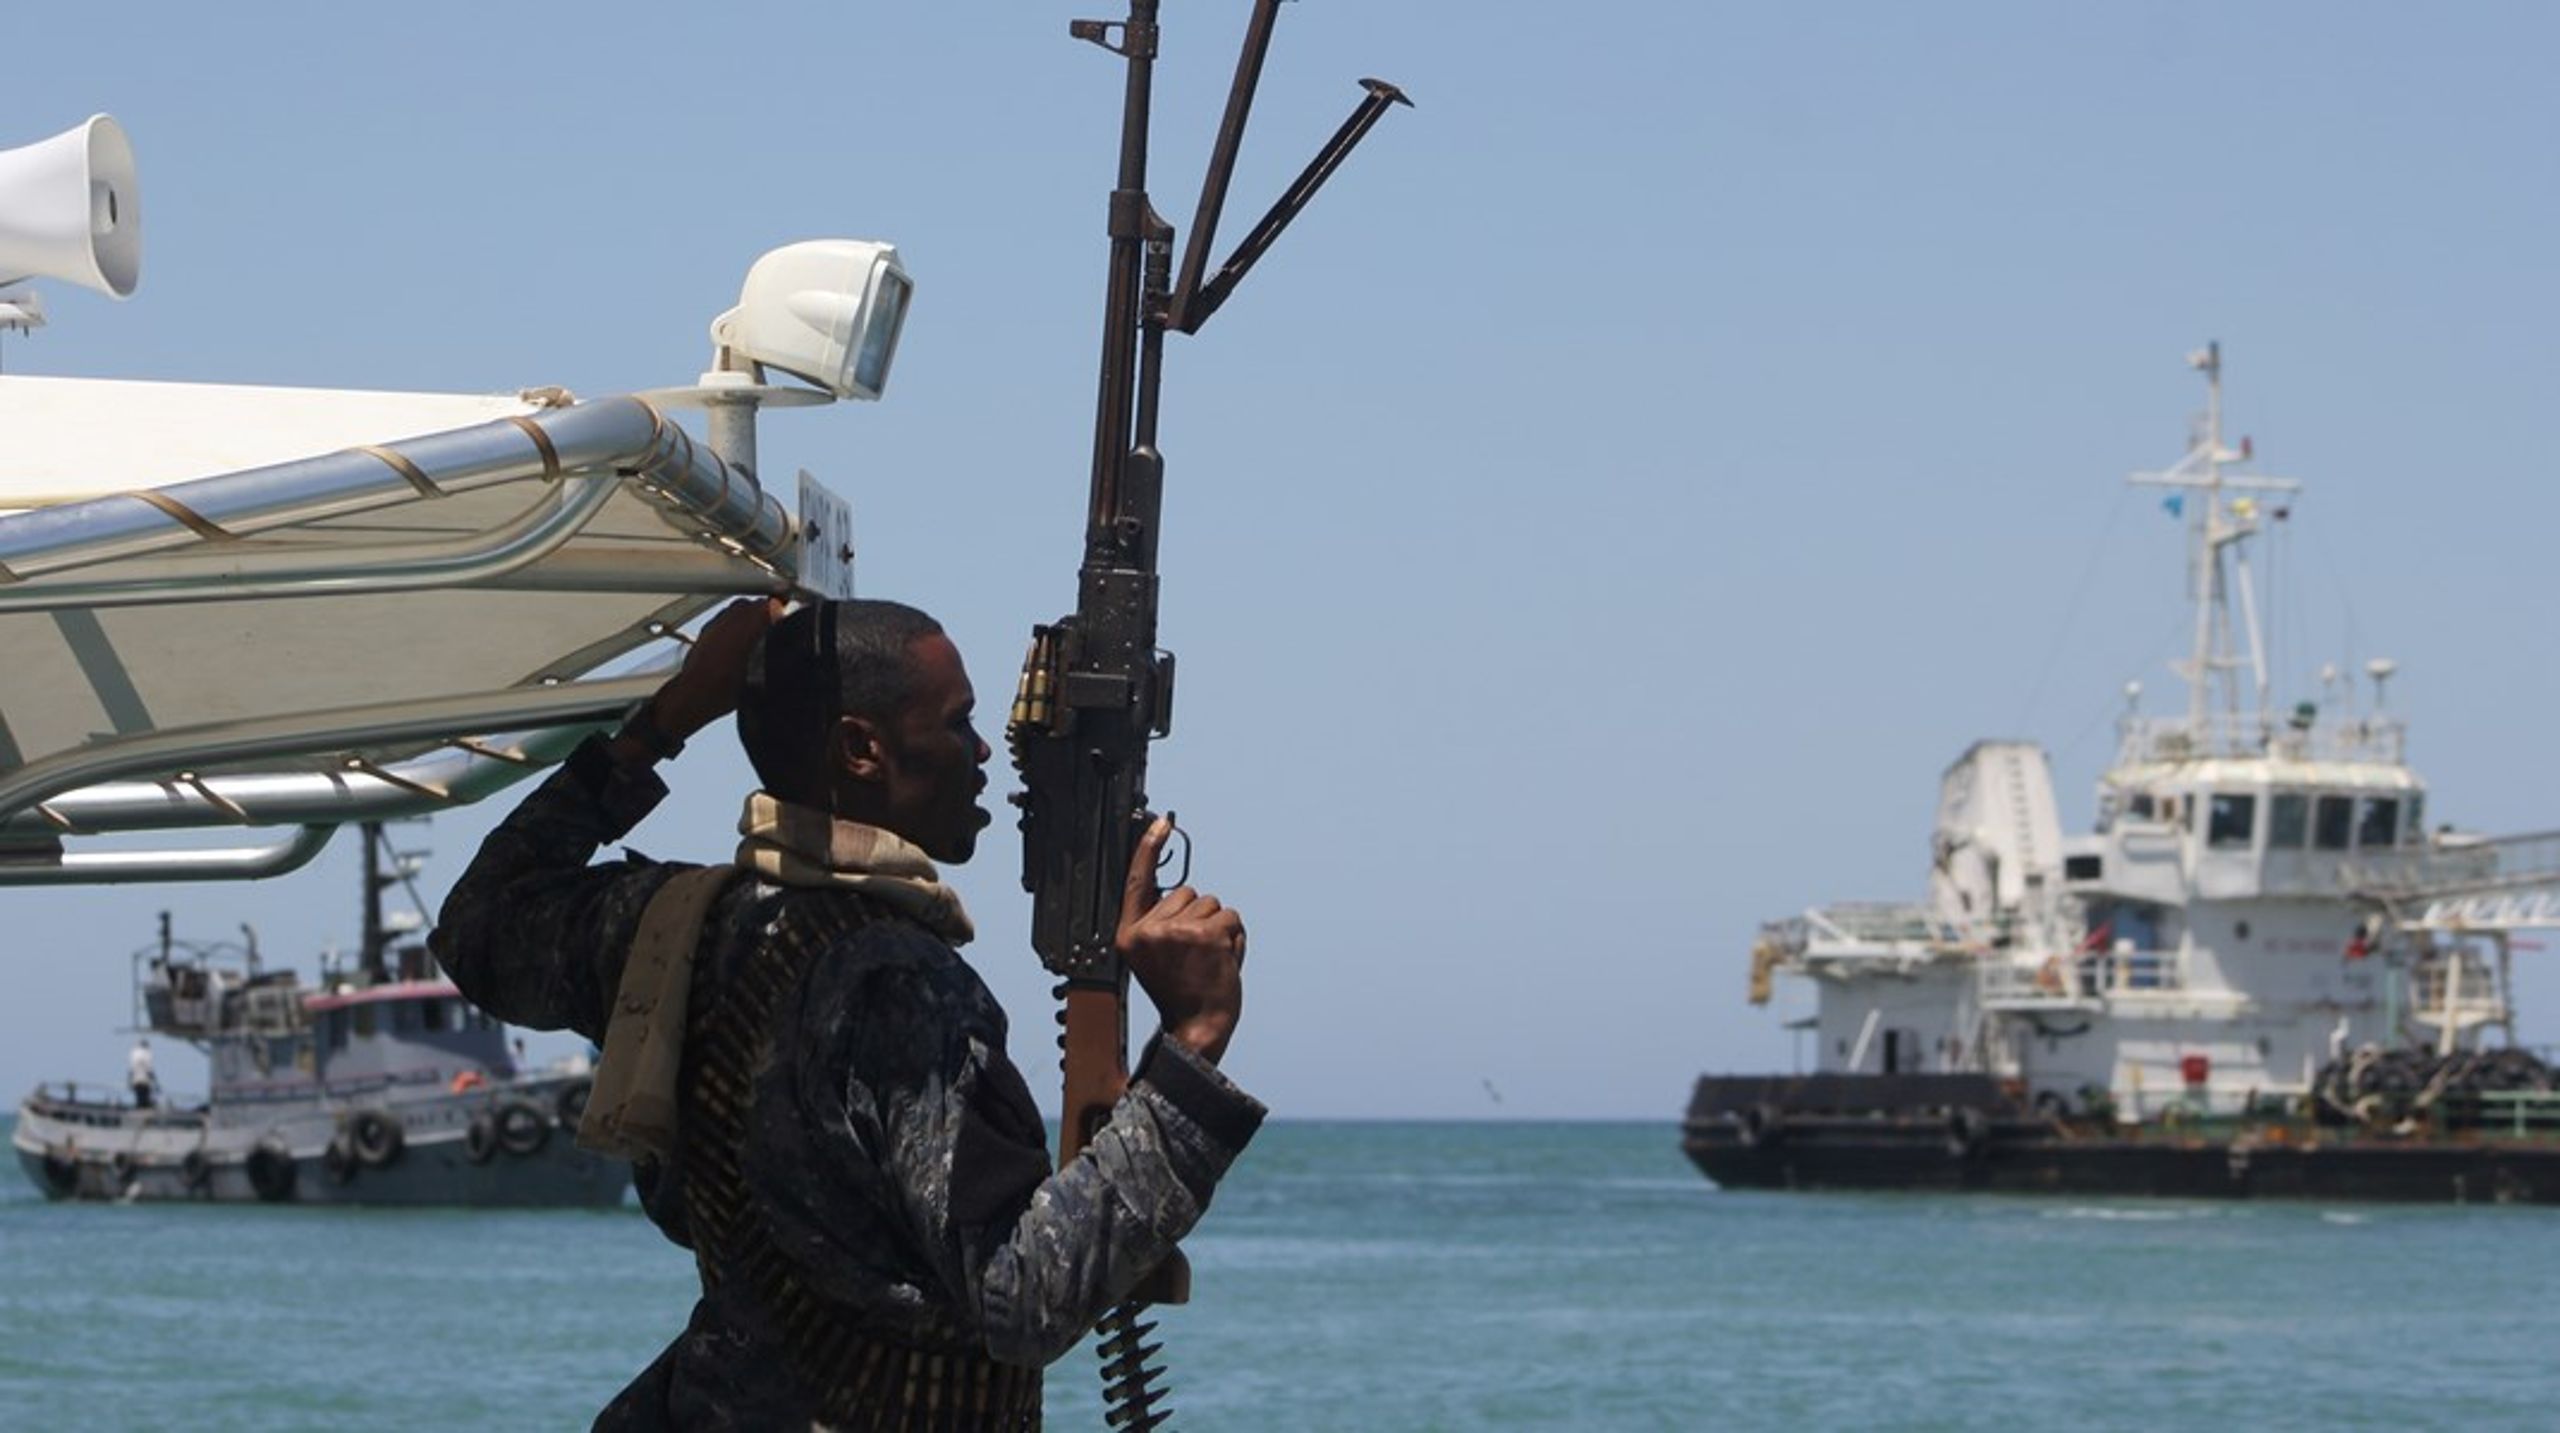 Danmark har erfaringer fra bekæmpelsen af pirater i Adenbugten. De skal bruges til at hjælpe Ghanas flåde i kampen mod pirater i Guineabugten, skriver Rikke Haugegaard.